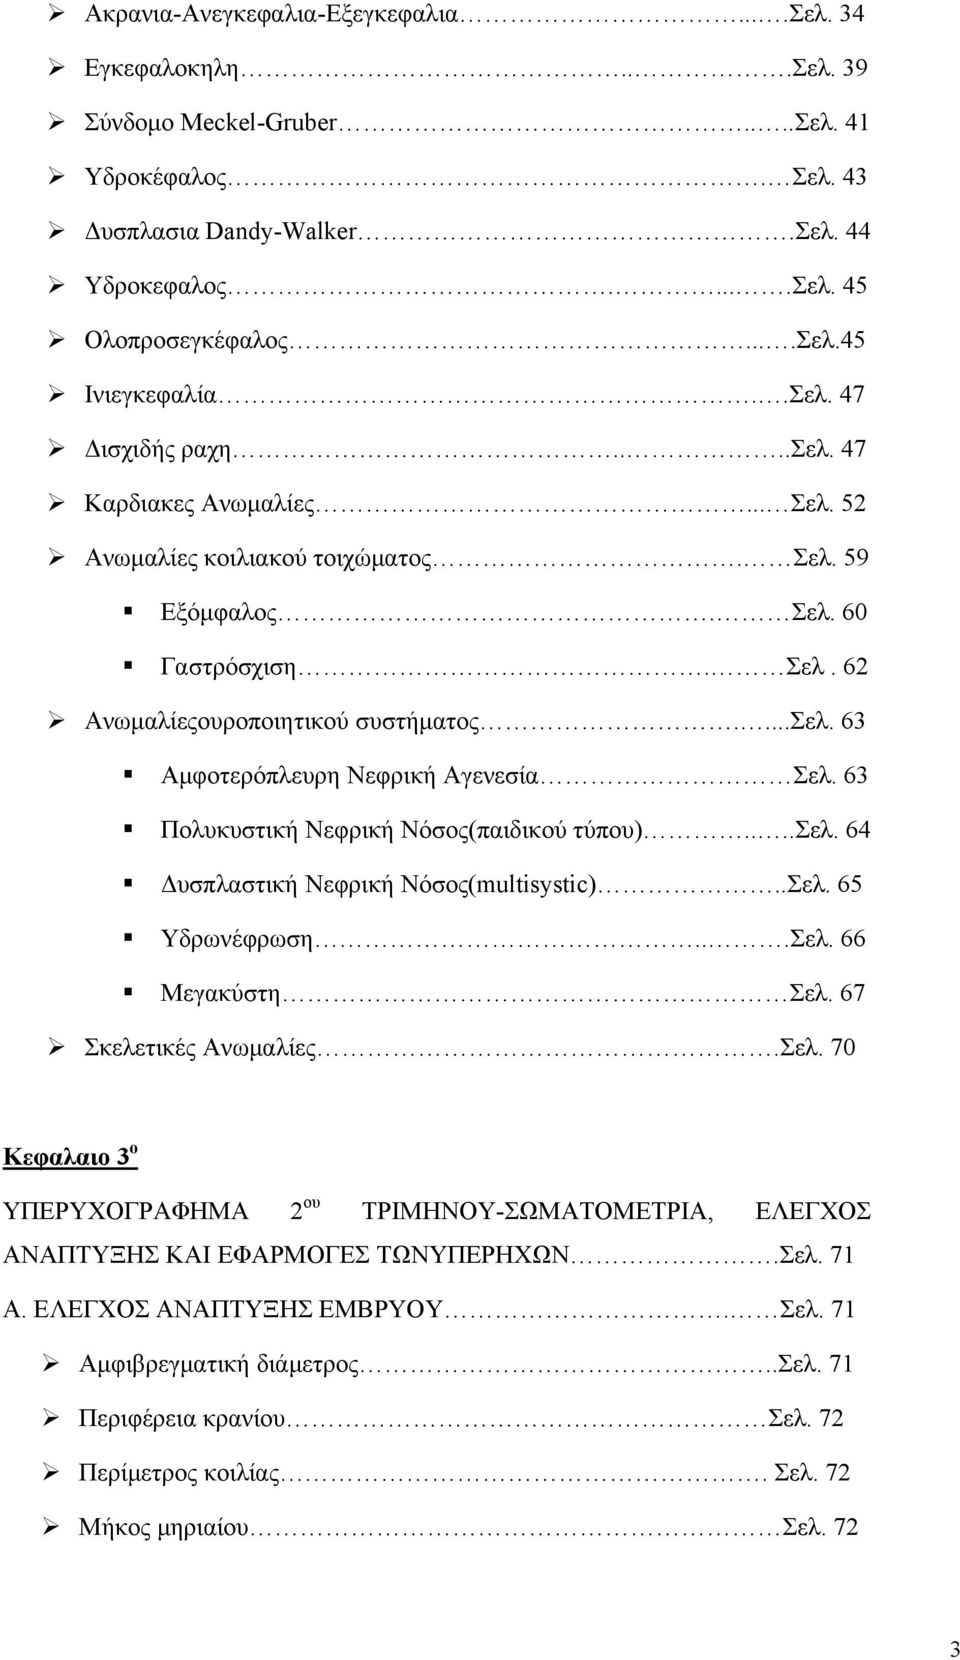 63 Πολυκυστική Νεφρική Νόσος(παιδικού τύπου)....σελ. 64 Δυσπλαστική Νεφρική Νόσος(multisystic)..Σελ.